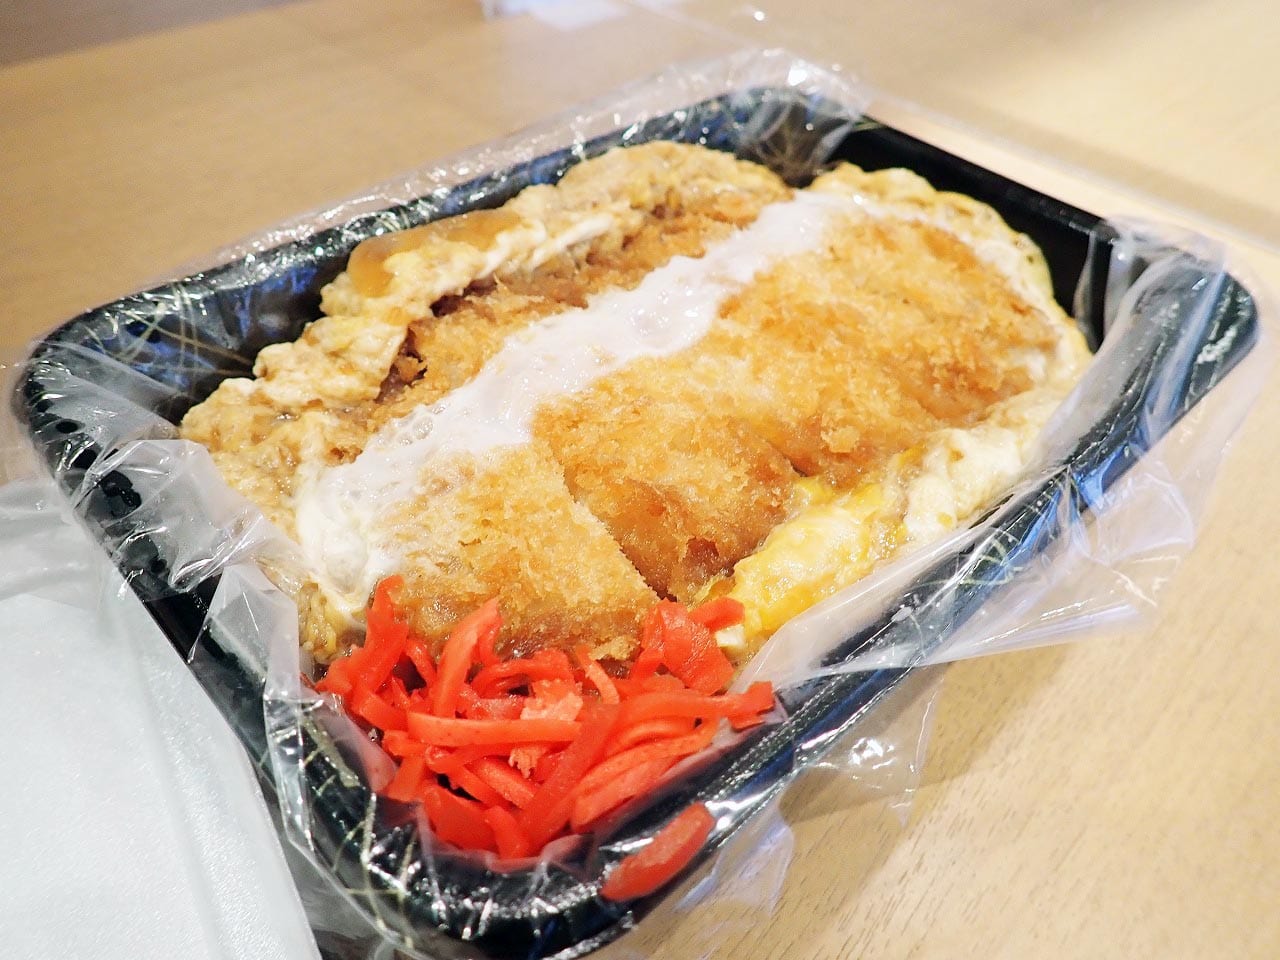 親子丼が人気の川越の名店『小江戸オハナ』